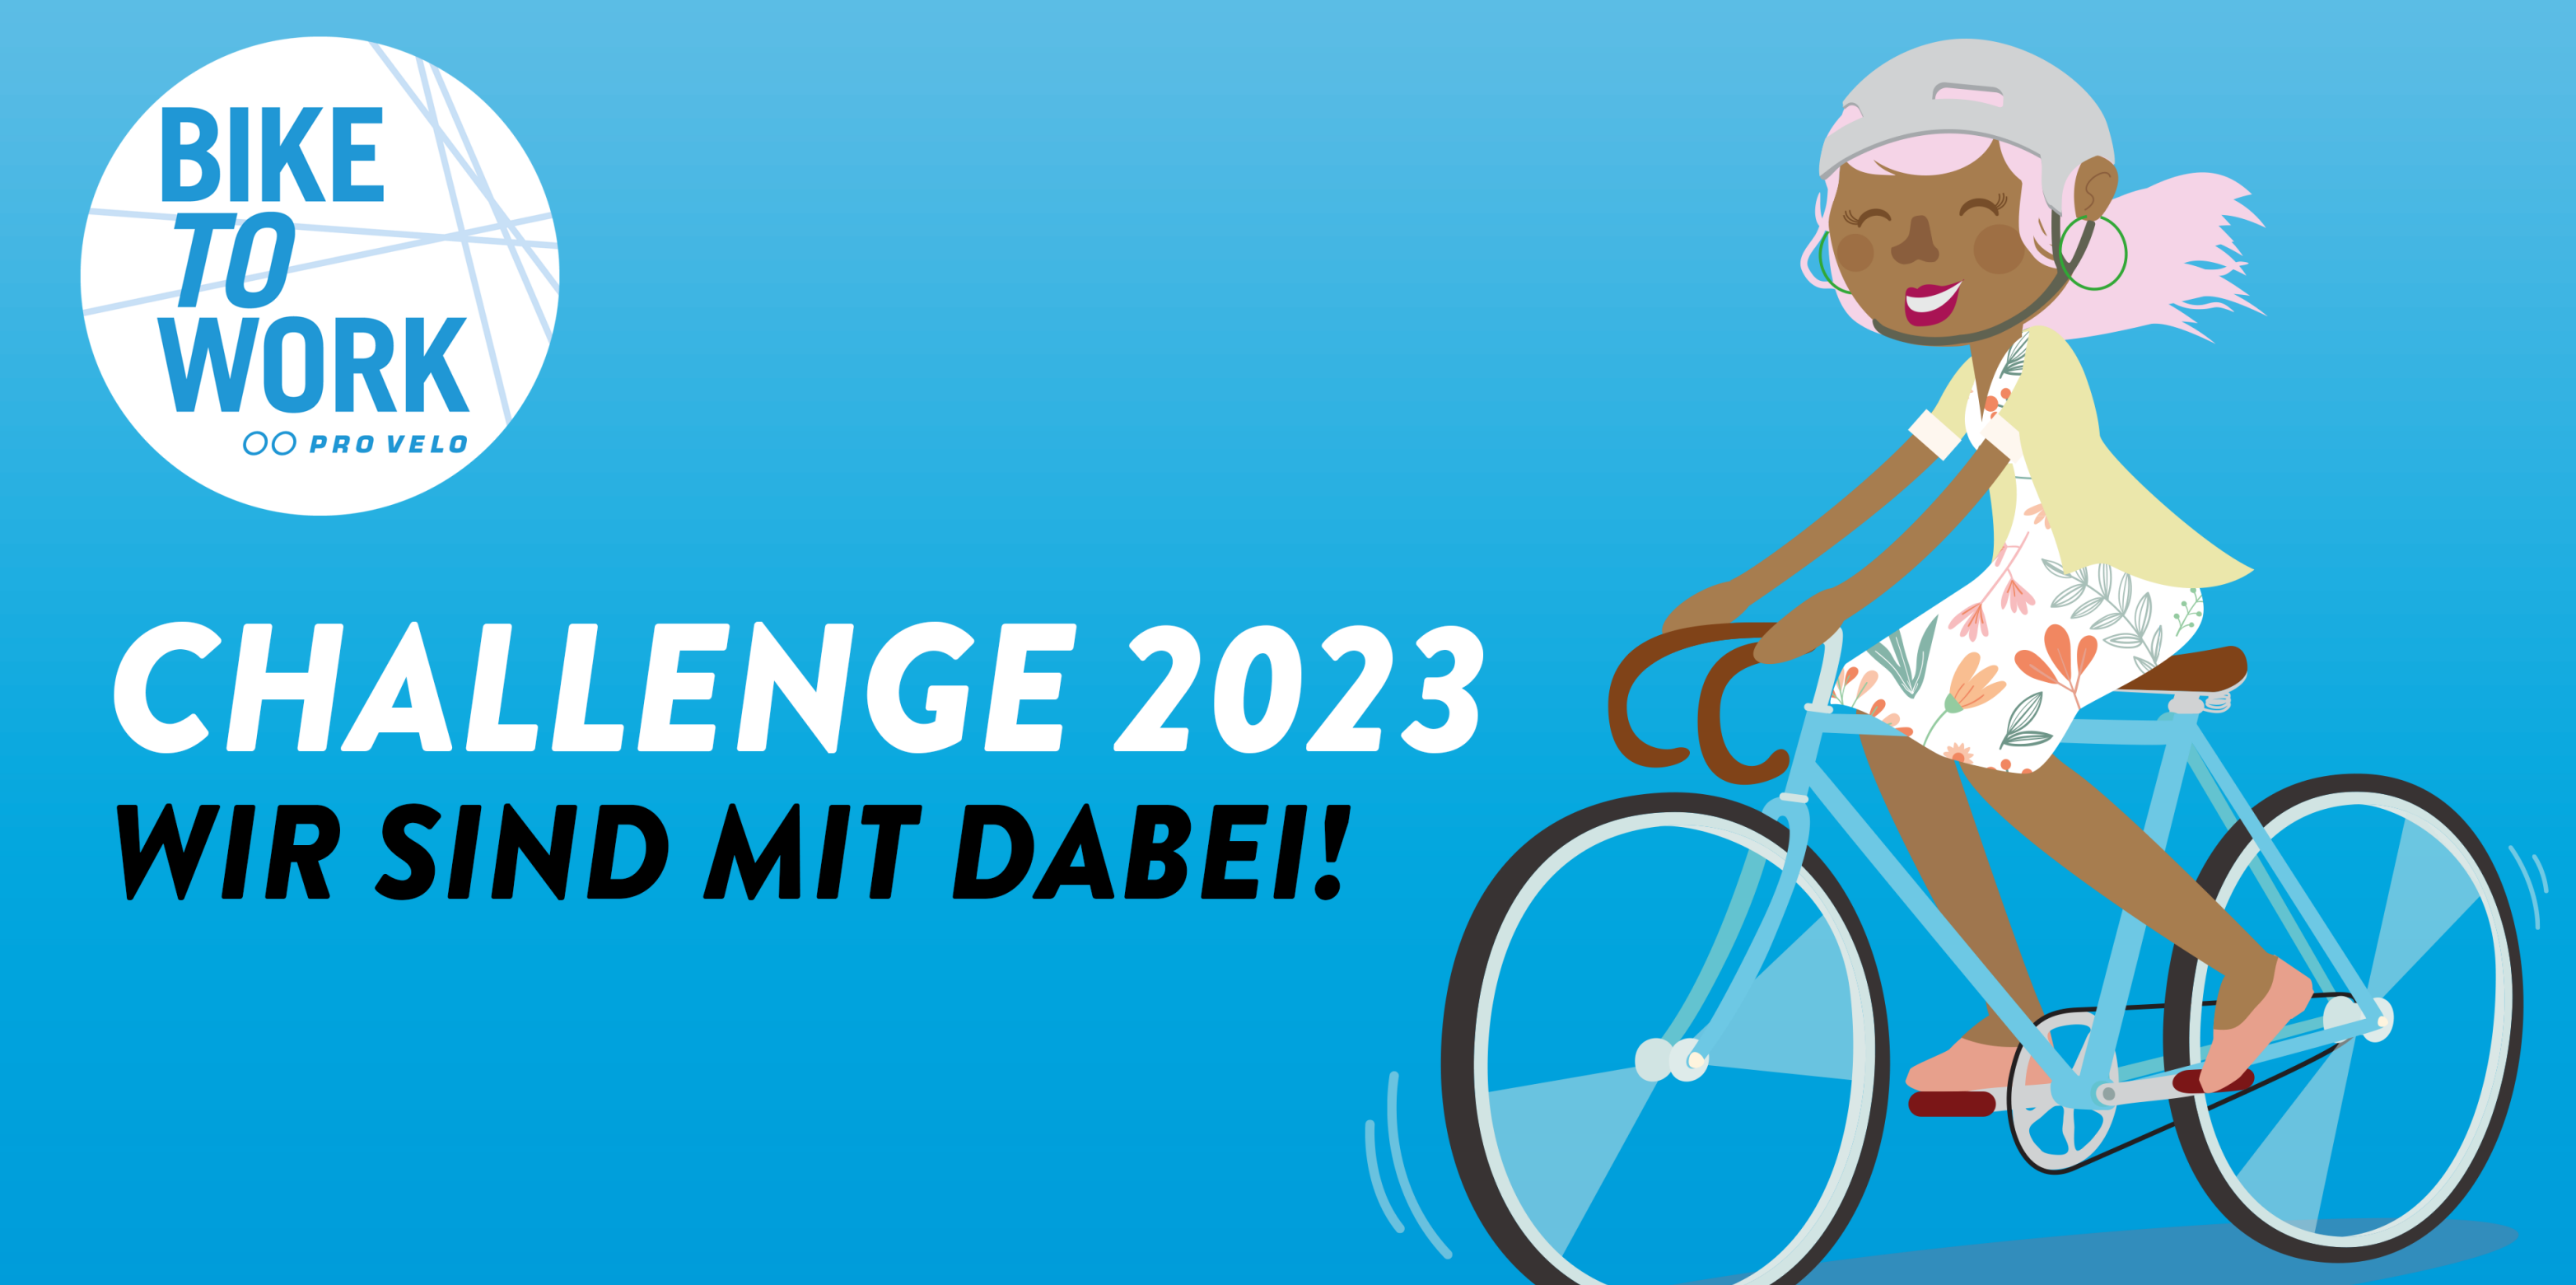 Challenge 2023 wir sind mit dabei! Bike To Work. Illustration Frau auf Fahrrad.